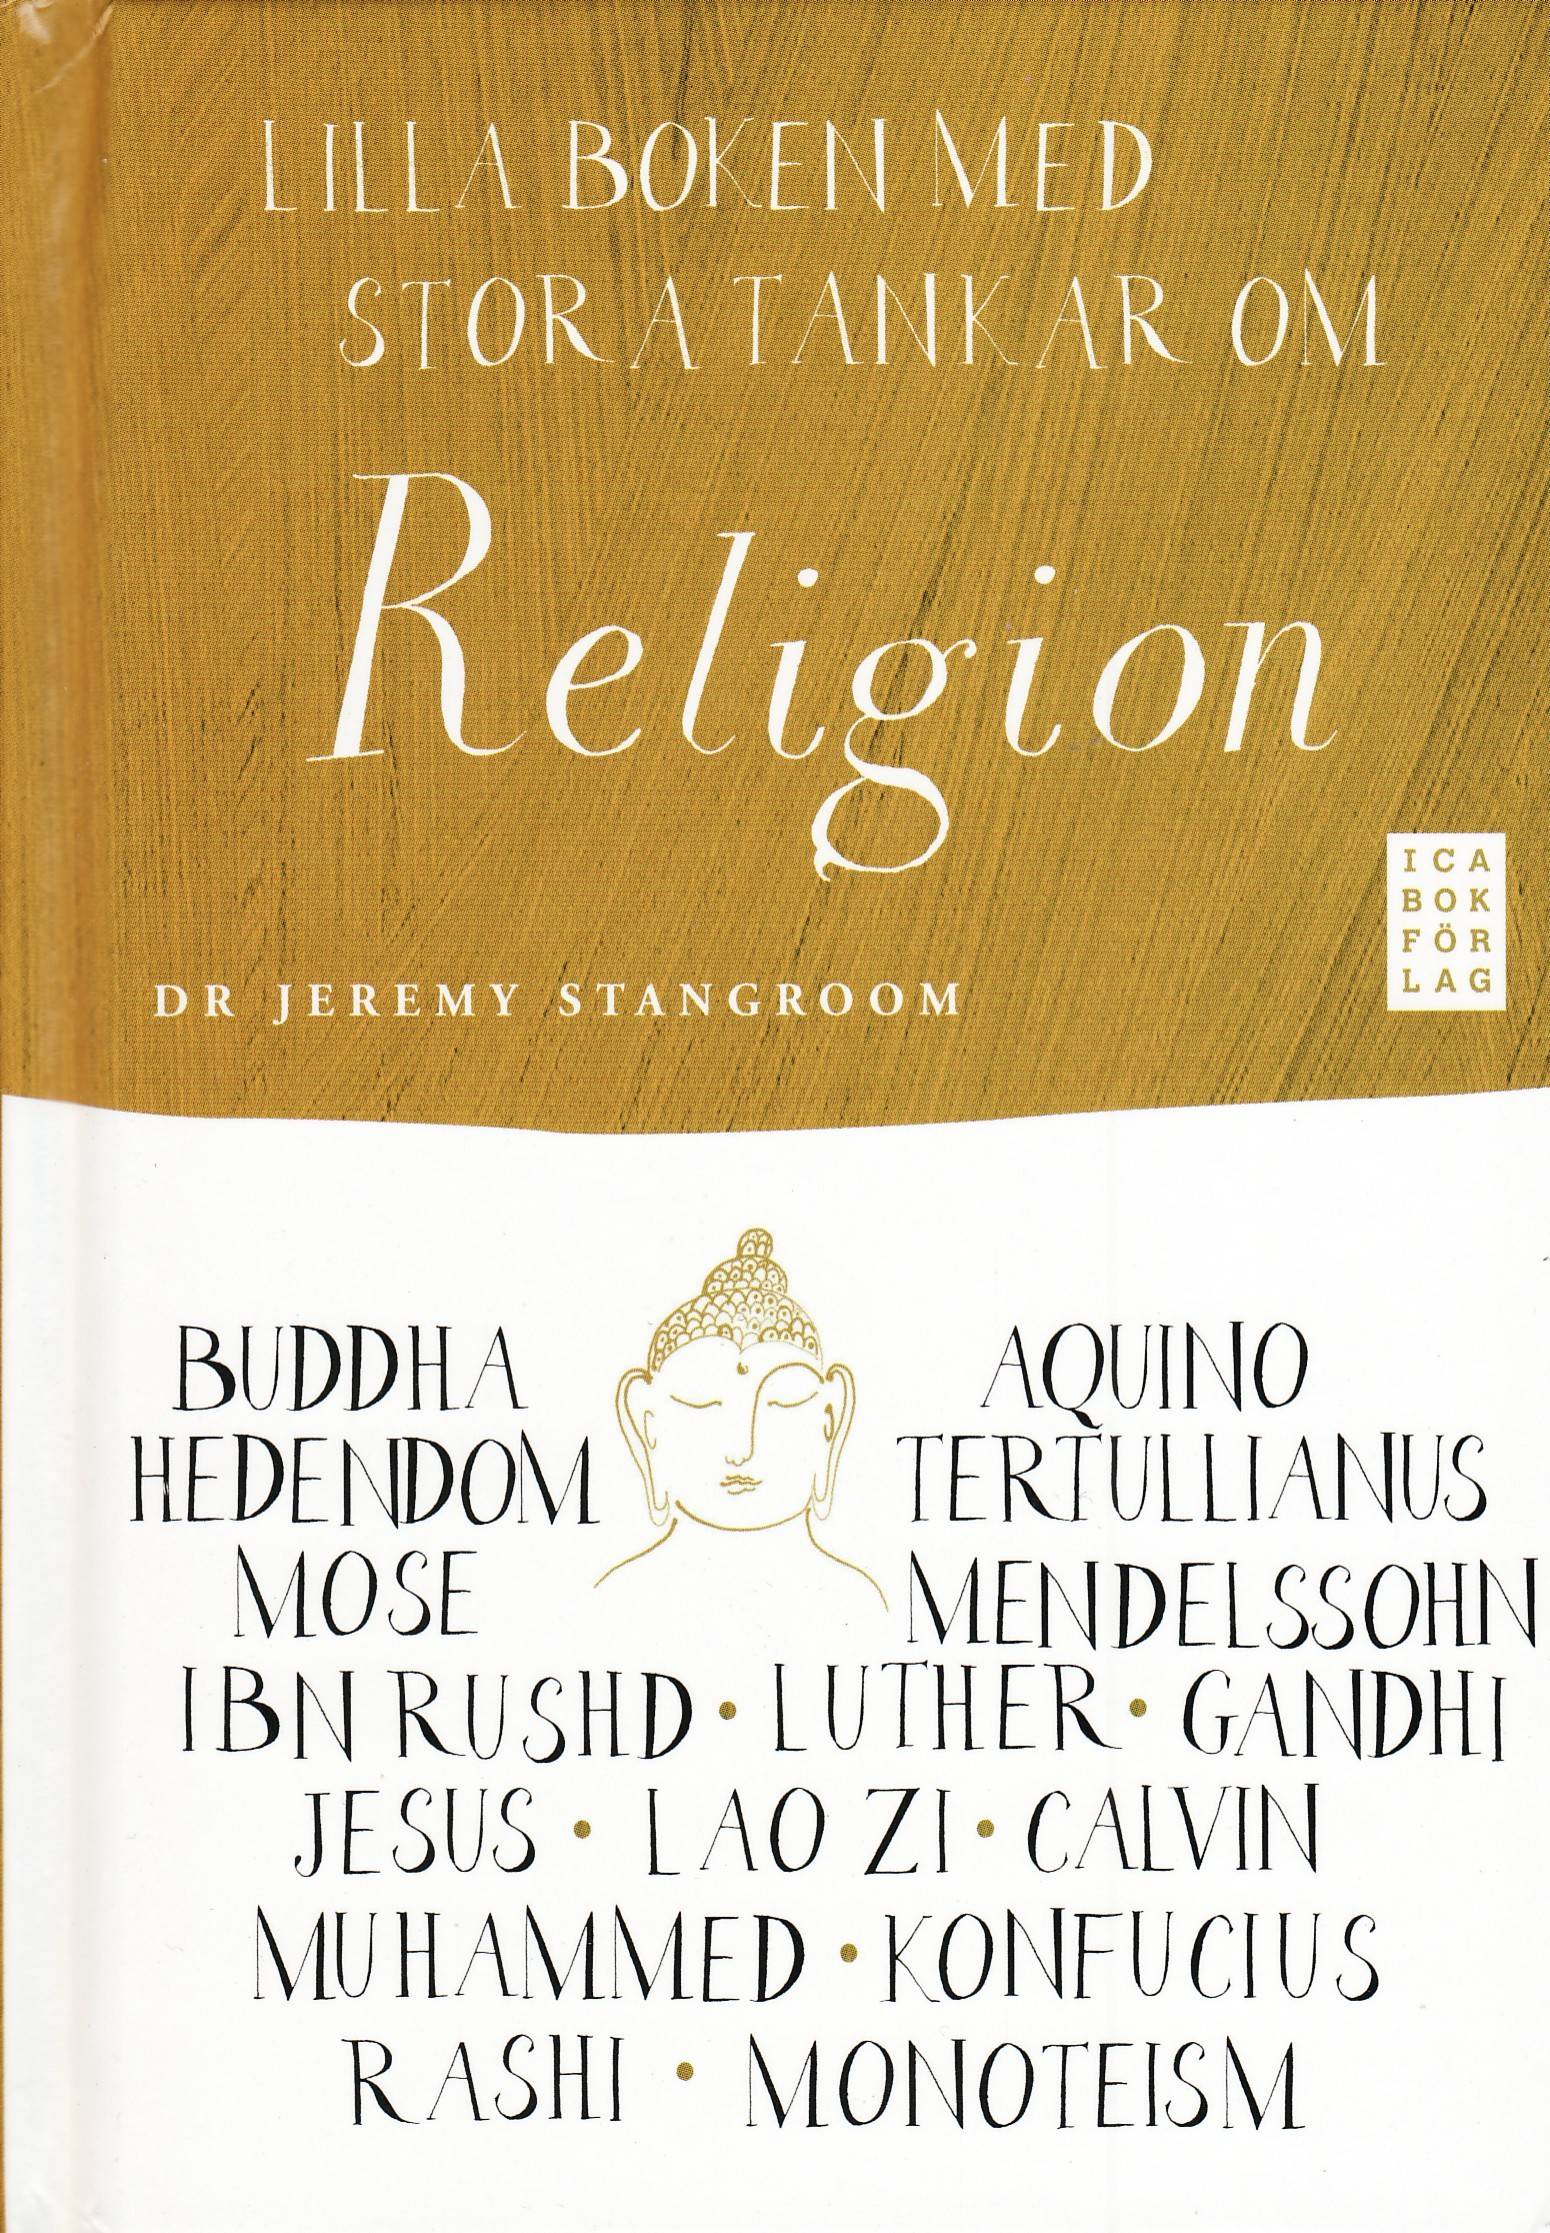 Lilla boken med stora tankar om religion